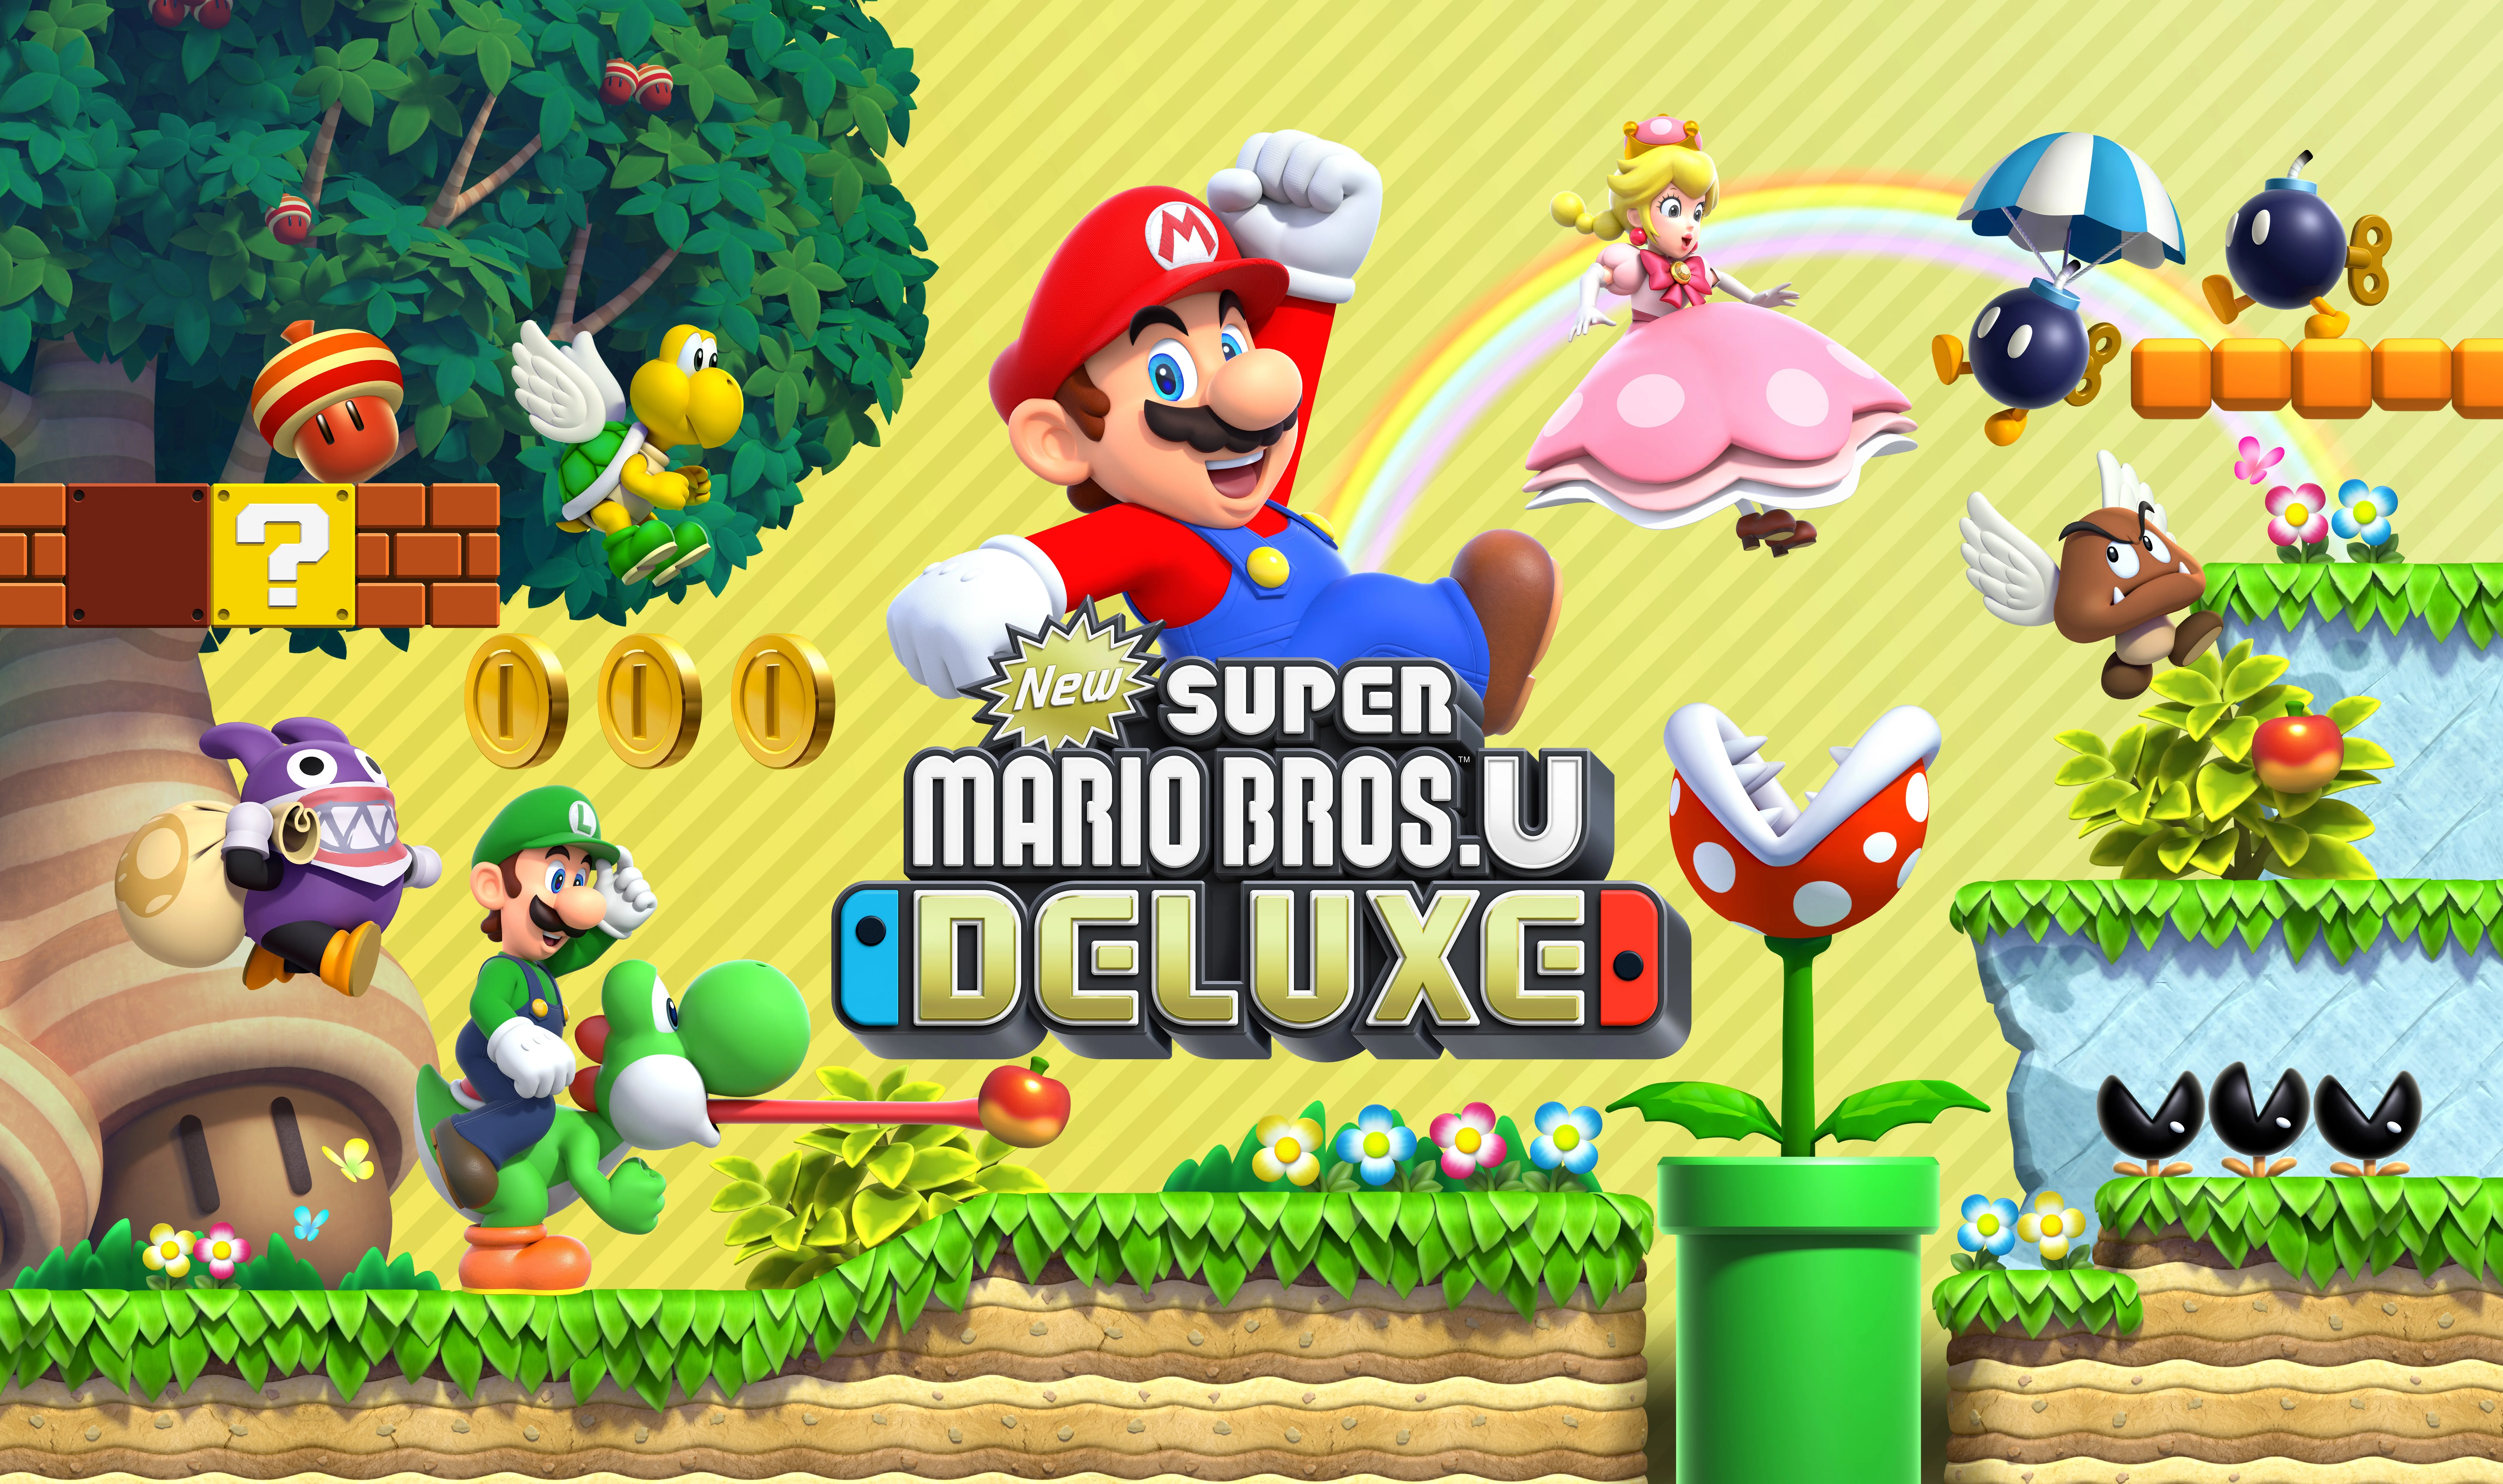 Mario new life. New super Mario Bros u Deluxe Nintendo Switch. Игра New super Mario Bros. U Deluxe. New super Mario Bros. U Deluxe для Nintendo Switch обложка. Игры super Mario Bros Нинтендо.